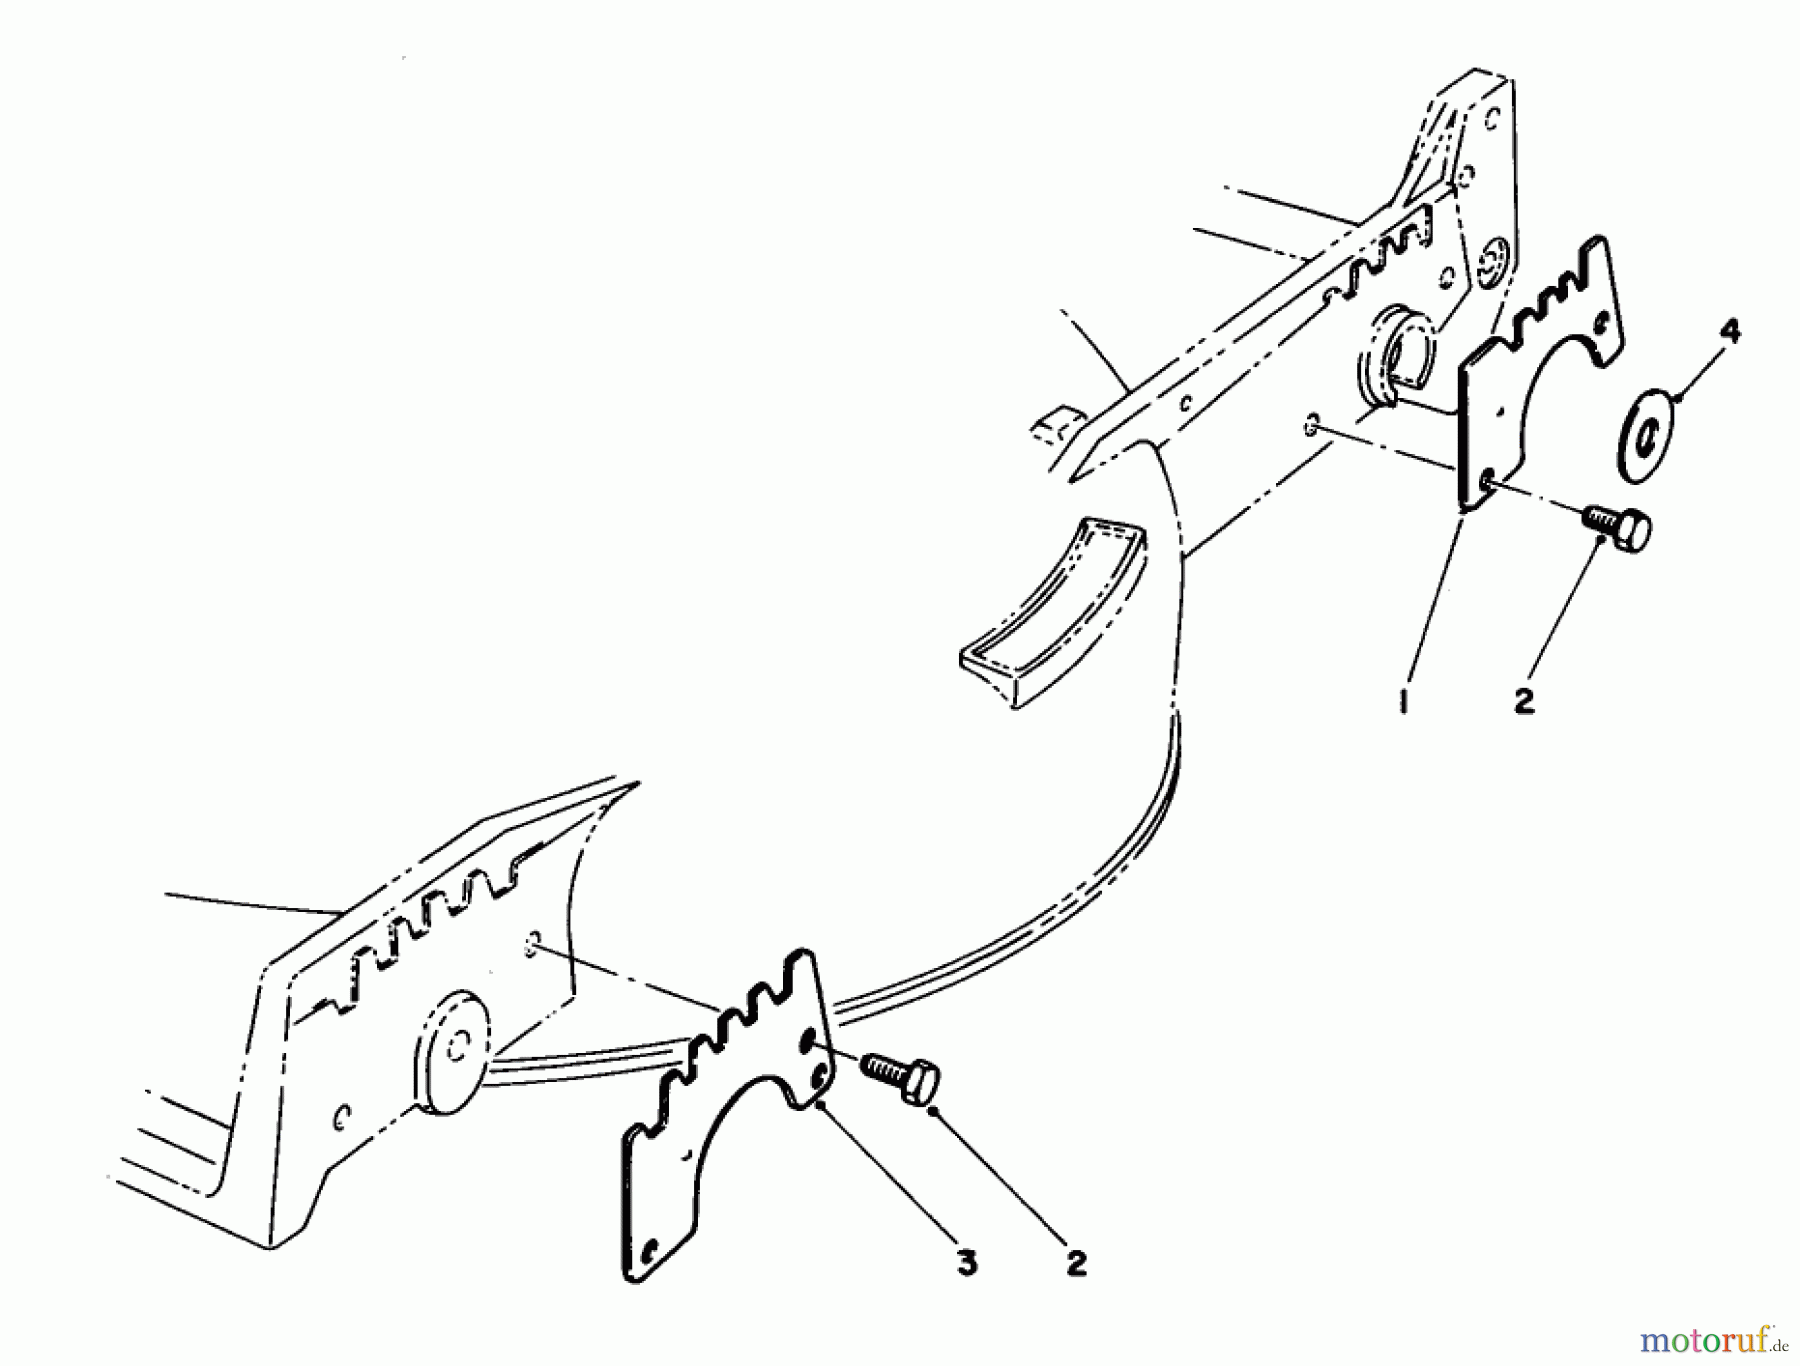  Toro Neu Mowers, Walk-Behind Seite 1 20215 - Toro Lawnmower, 1992 (2000001-2999999) WEAR PLATE MODEL NO. 49-4080 (OPTIONAL)